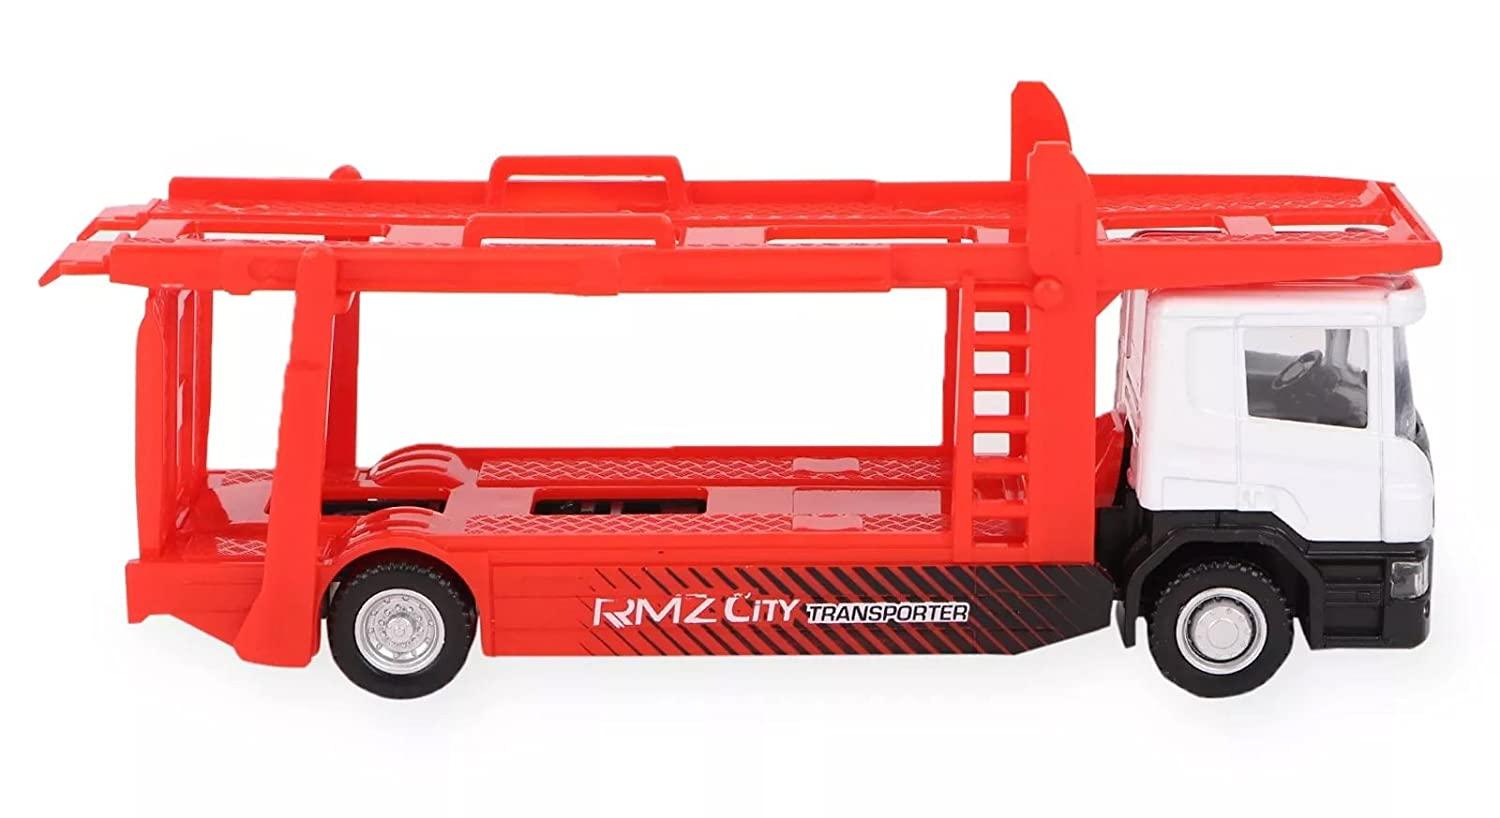 RMZ City Car 1:64 Scania Transporter